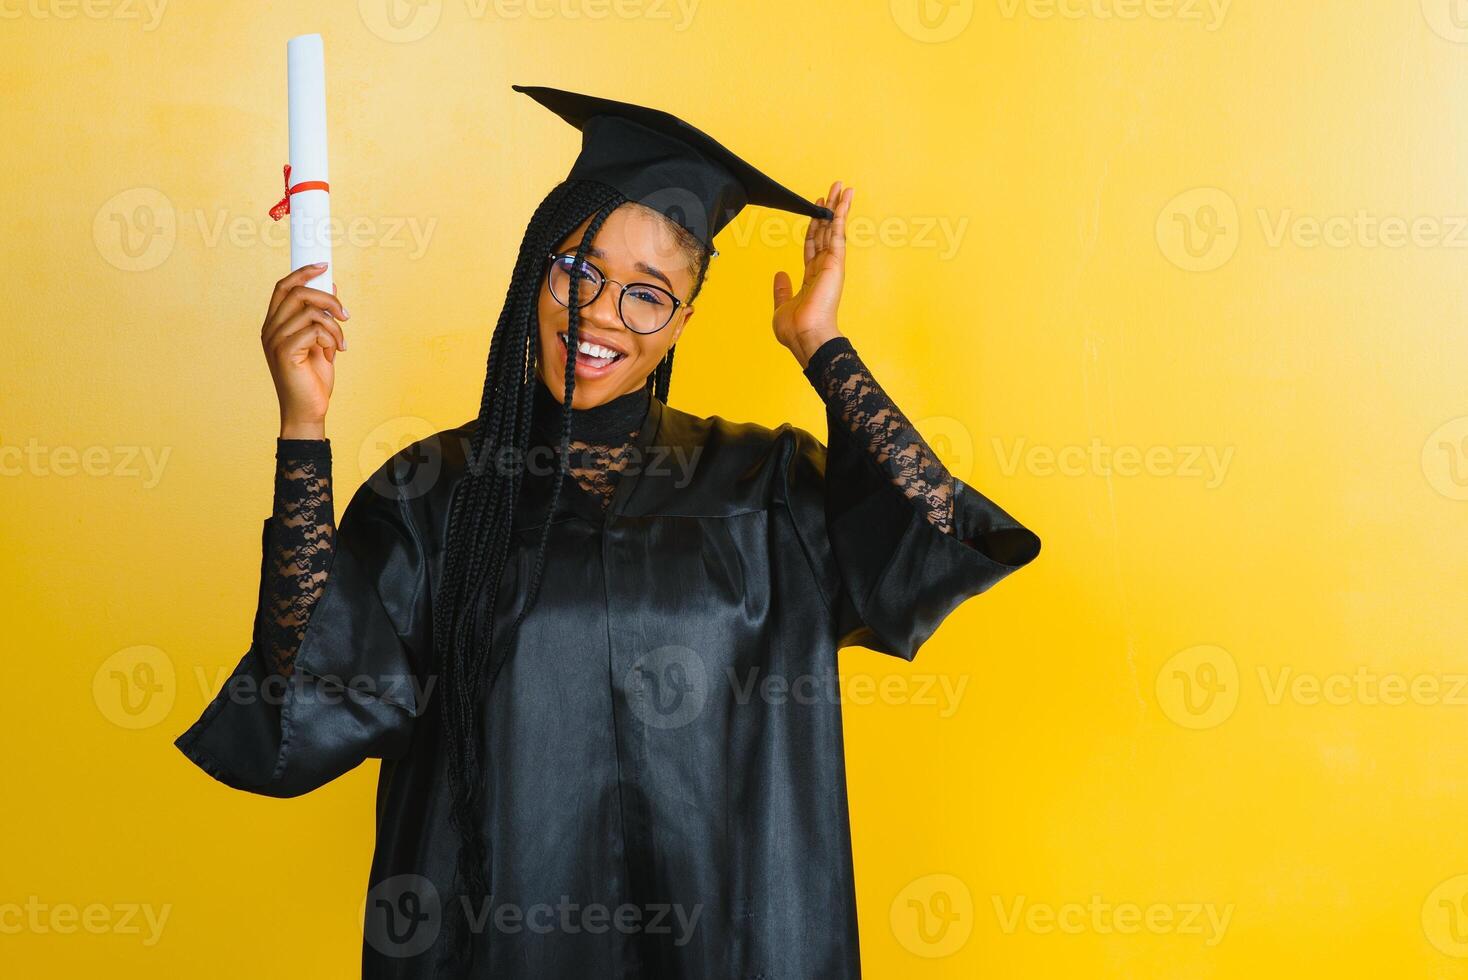 Alegre estudiante de posgrado afroamericano con diploma en la mano foto